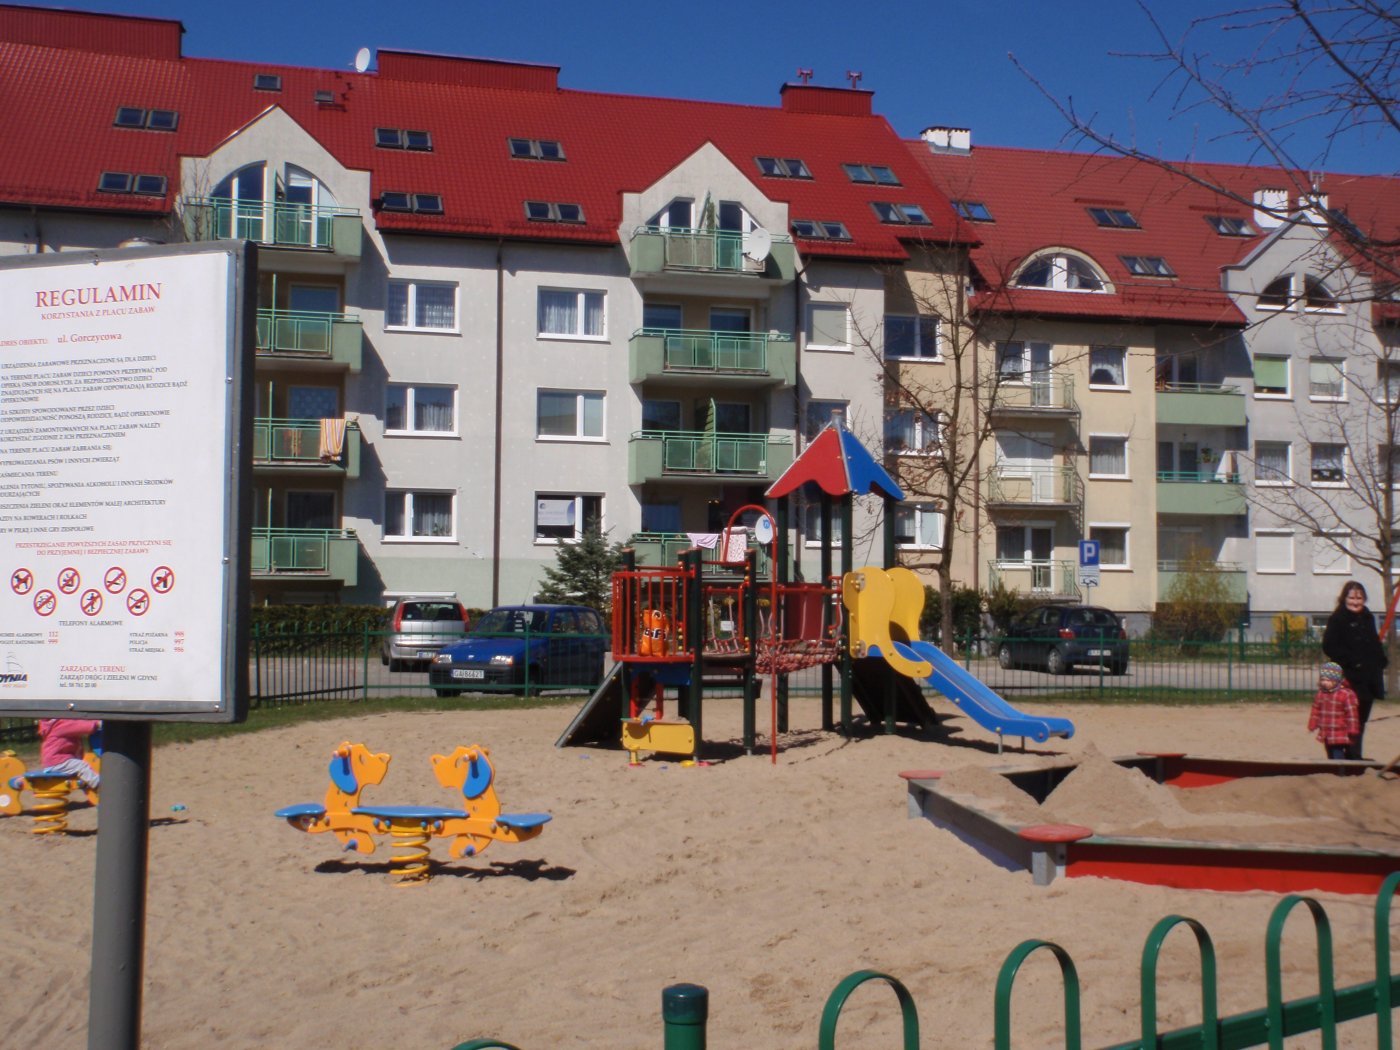 Plac zabaw przy ul. Gorczycowej, sprzęty zabawowe, blok mieszkalny